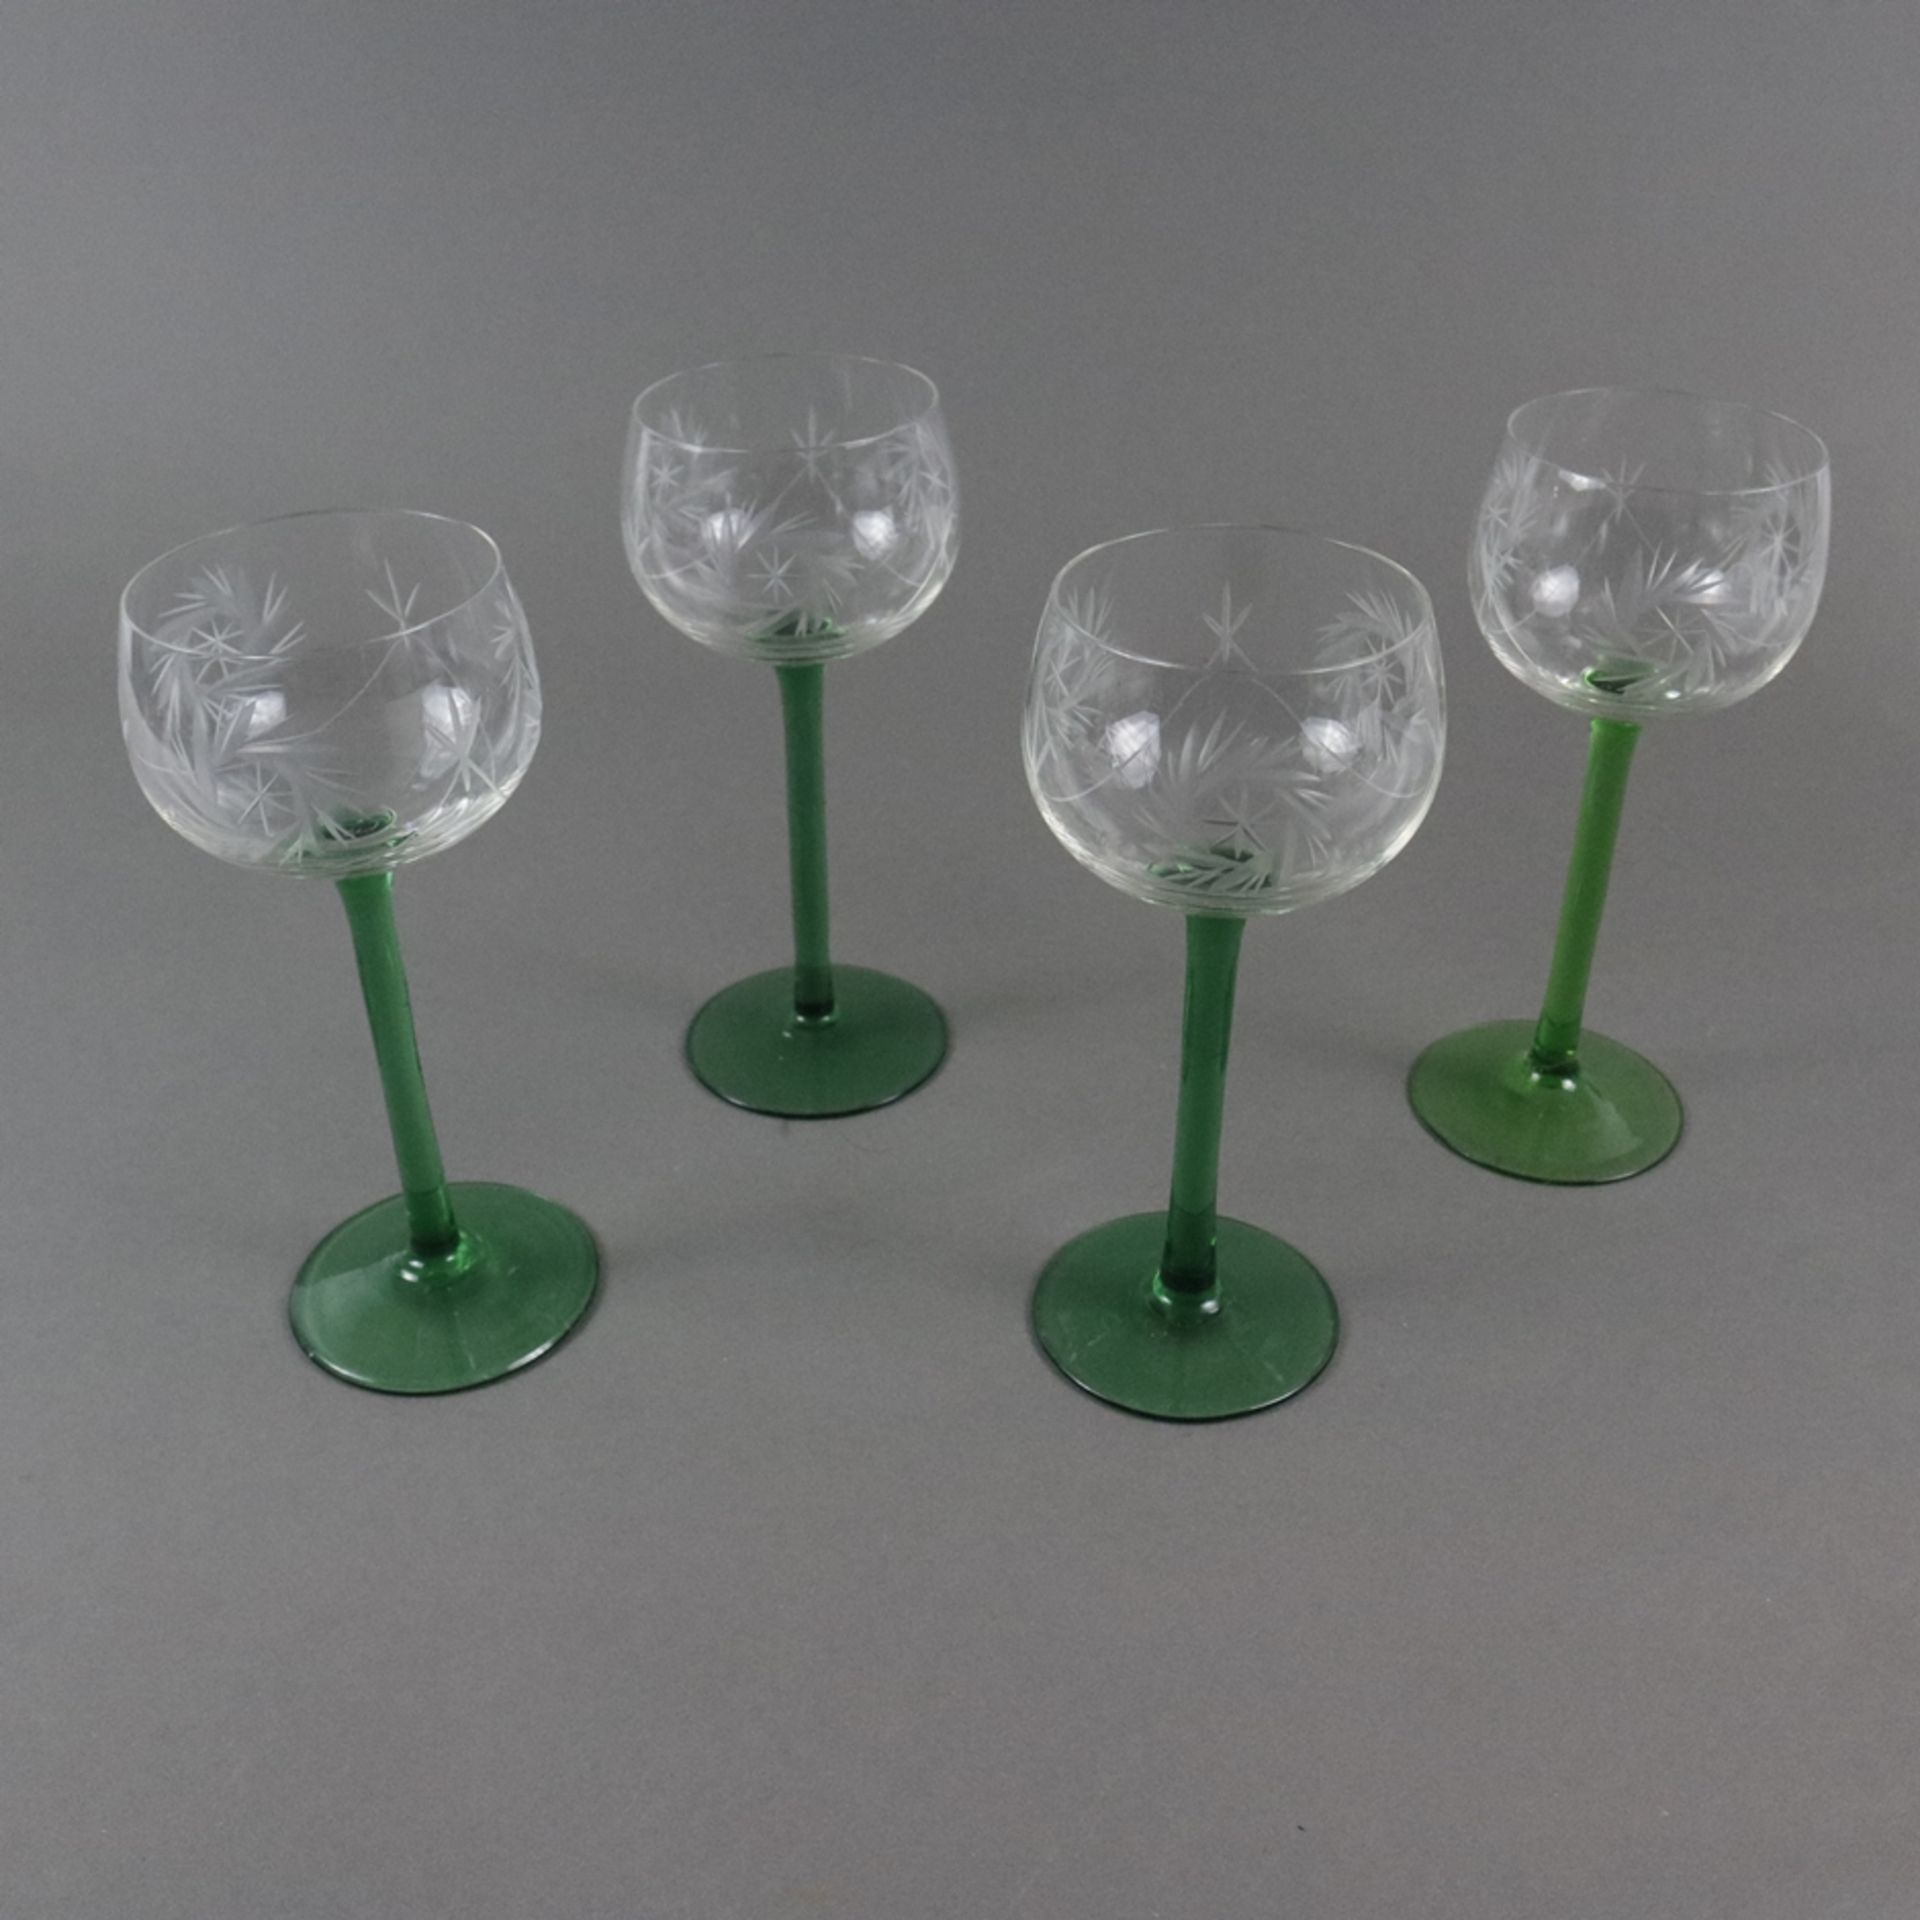 Vier Fußgläser - Kelch farbloses Glas mit Gravurdekor, Schaft und Rundfuß grünes Glas (1x im Farbto - Image 2 of 4